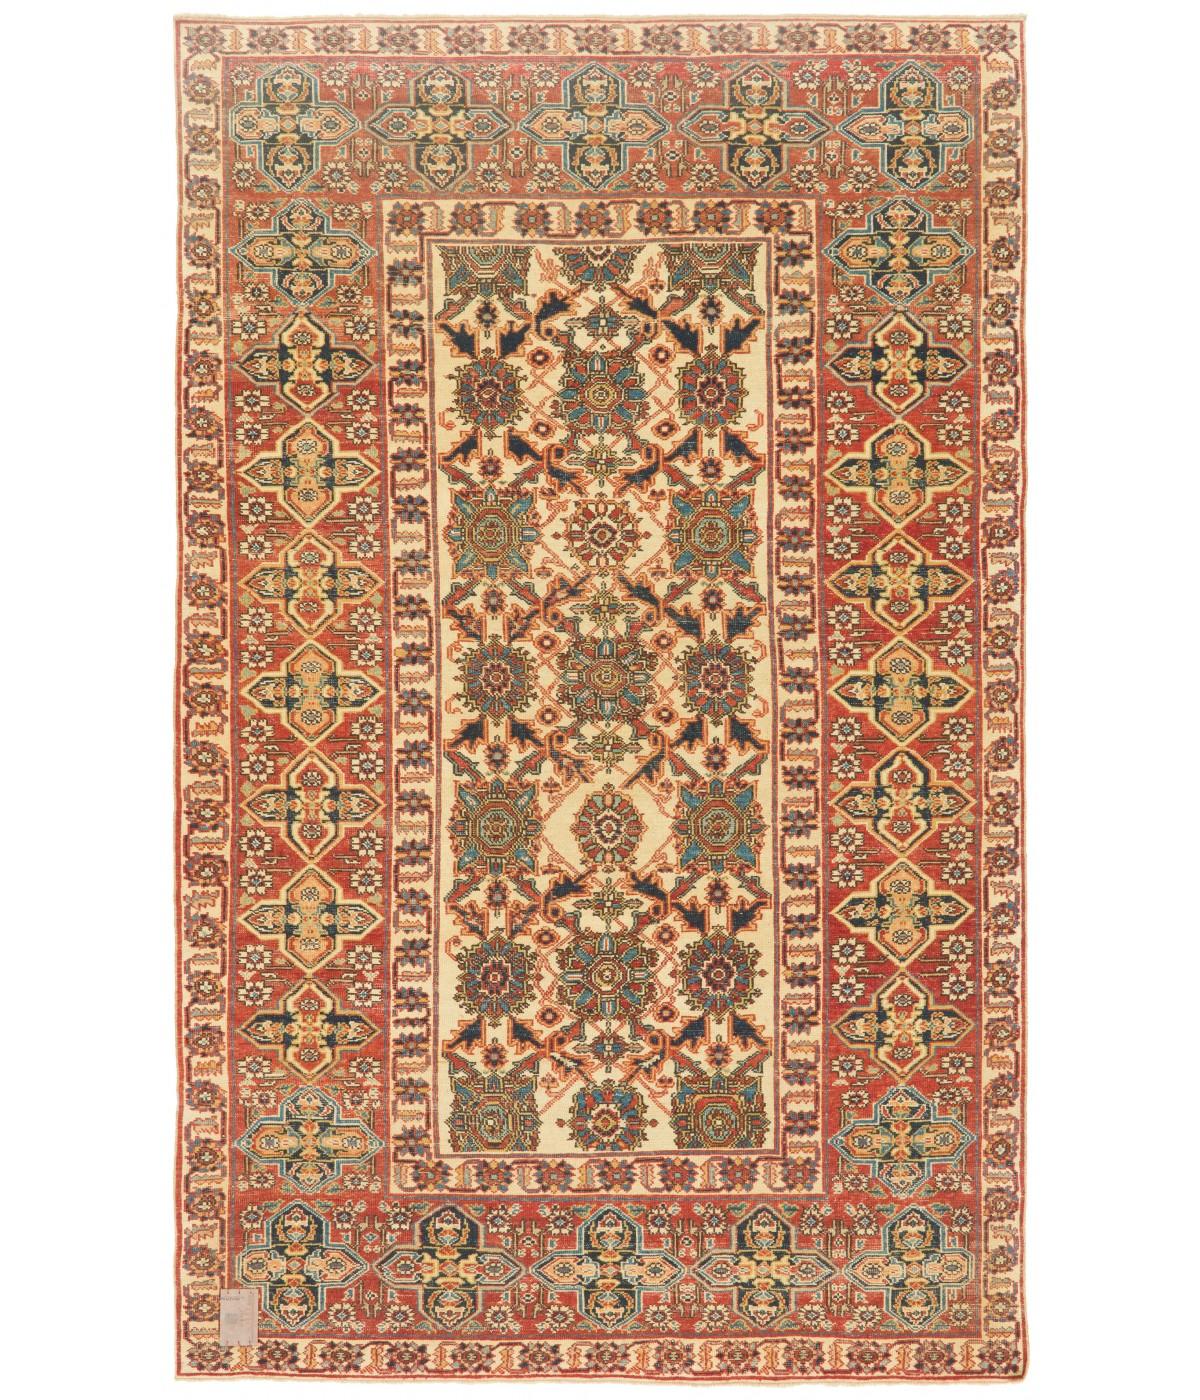 Die Designquelle des Teppichs stammt aus dem Buch Caucasian Carpets, E. Gans-Reudin, Thames and Hudson, Schweiz 1986, S. 284. Dies ist ein spektakuläres Beispiel für einen Teppich des Typs Orducth-Konagkend aus dem späten 19. Jahrhundert in der